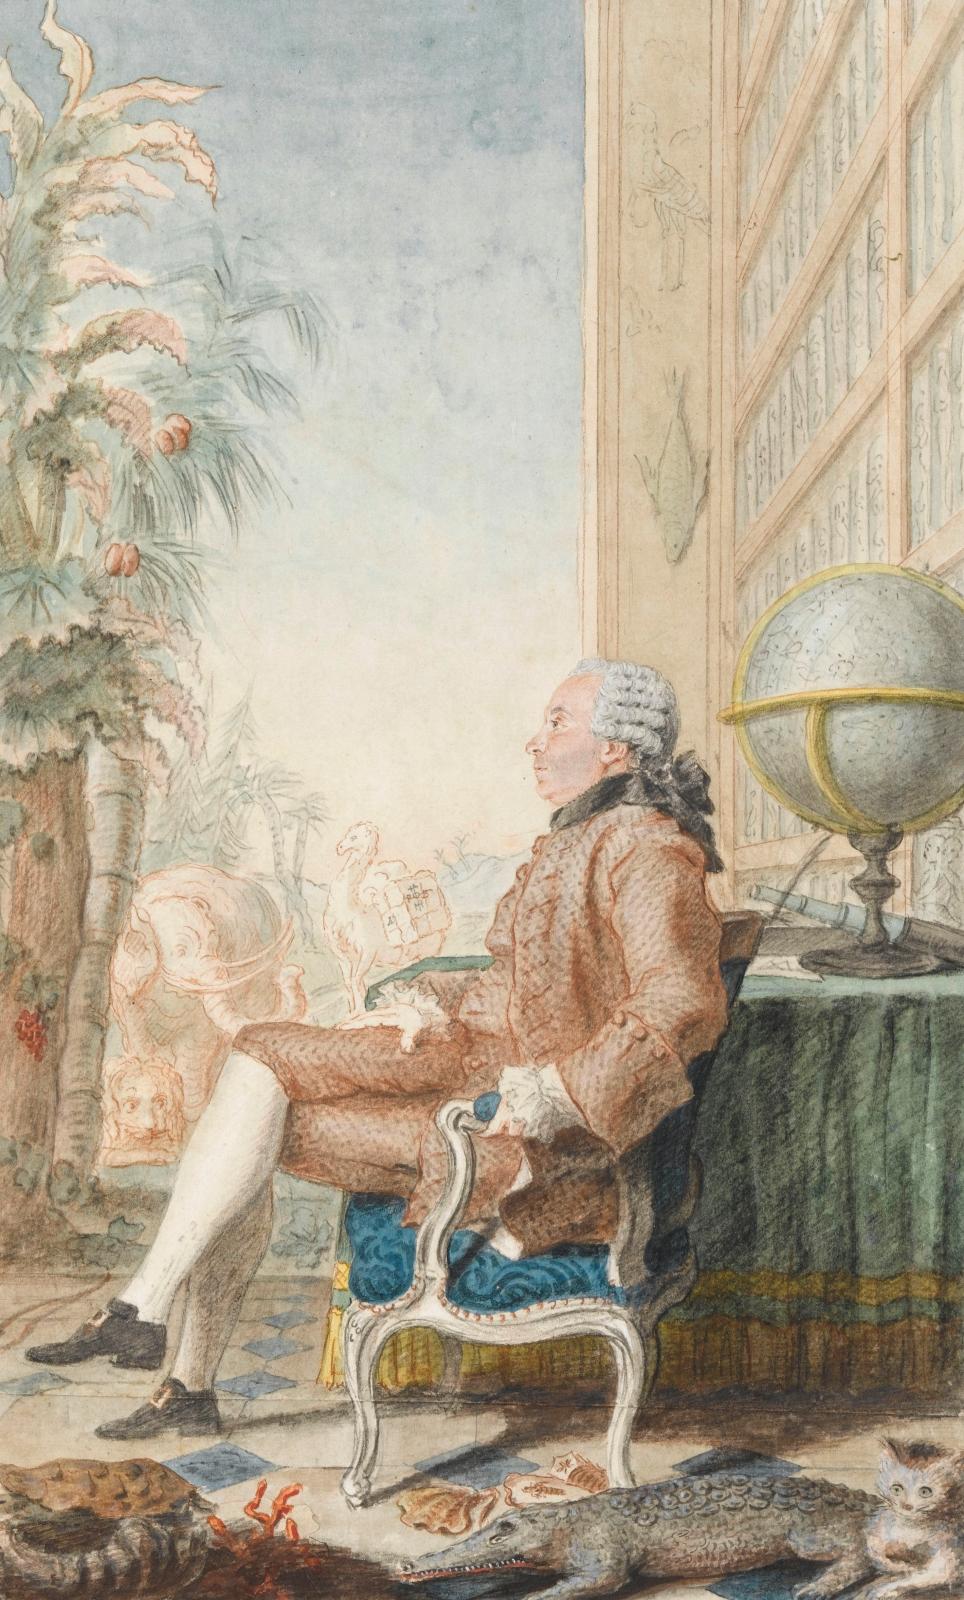 Louis Carrogis dit Carmontelle (1717-1806), M. de Buffon, 1769, mine de plomb, aquarelle, sanguine et gouache sur papier, 30,5 x 16,6 cm (